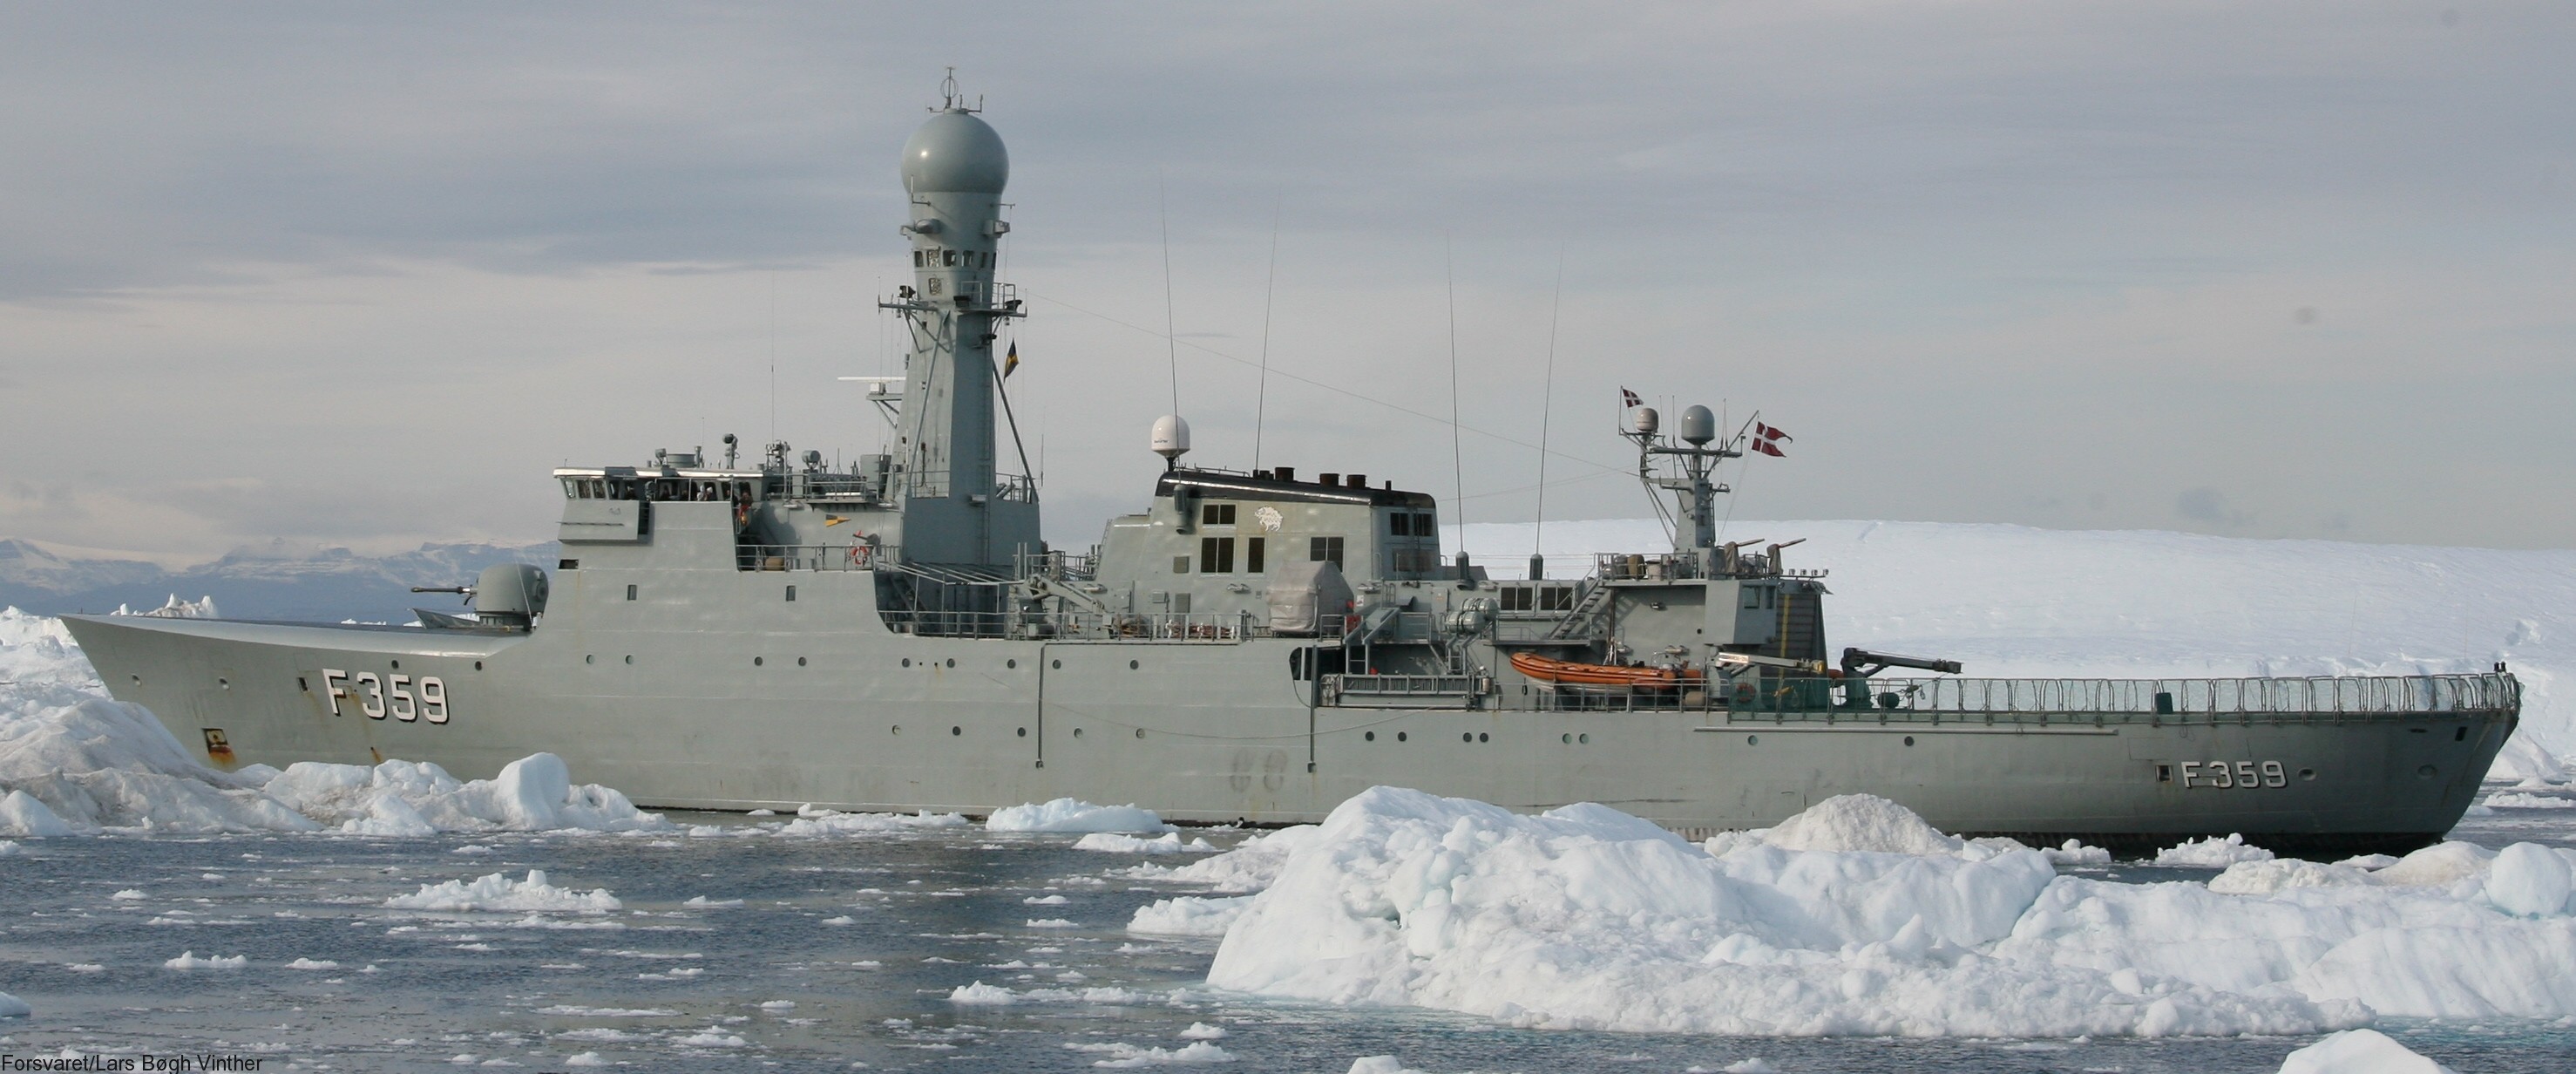 f-359 hdms vaedderen thetis class ocean patrol frigate royal danish navy kongelige danske marine kdm inspektionsskibet 29